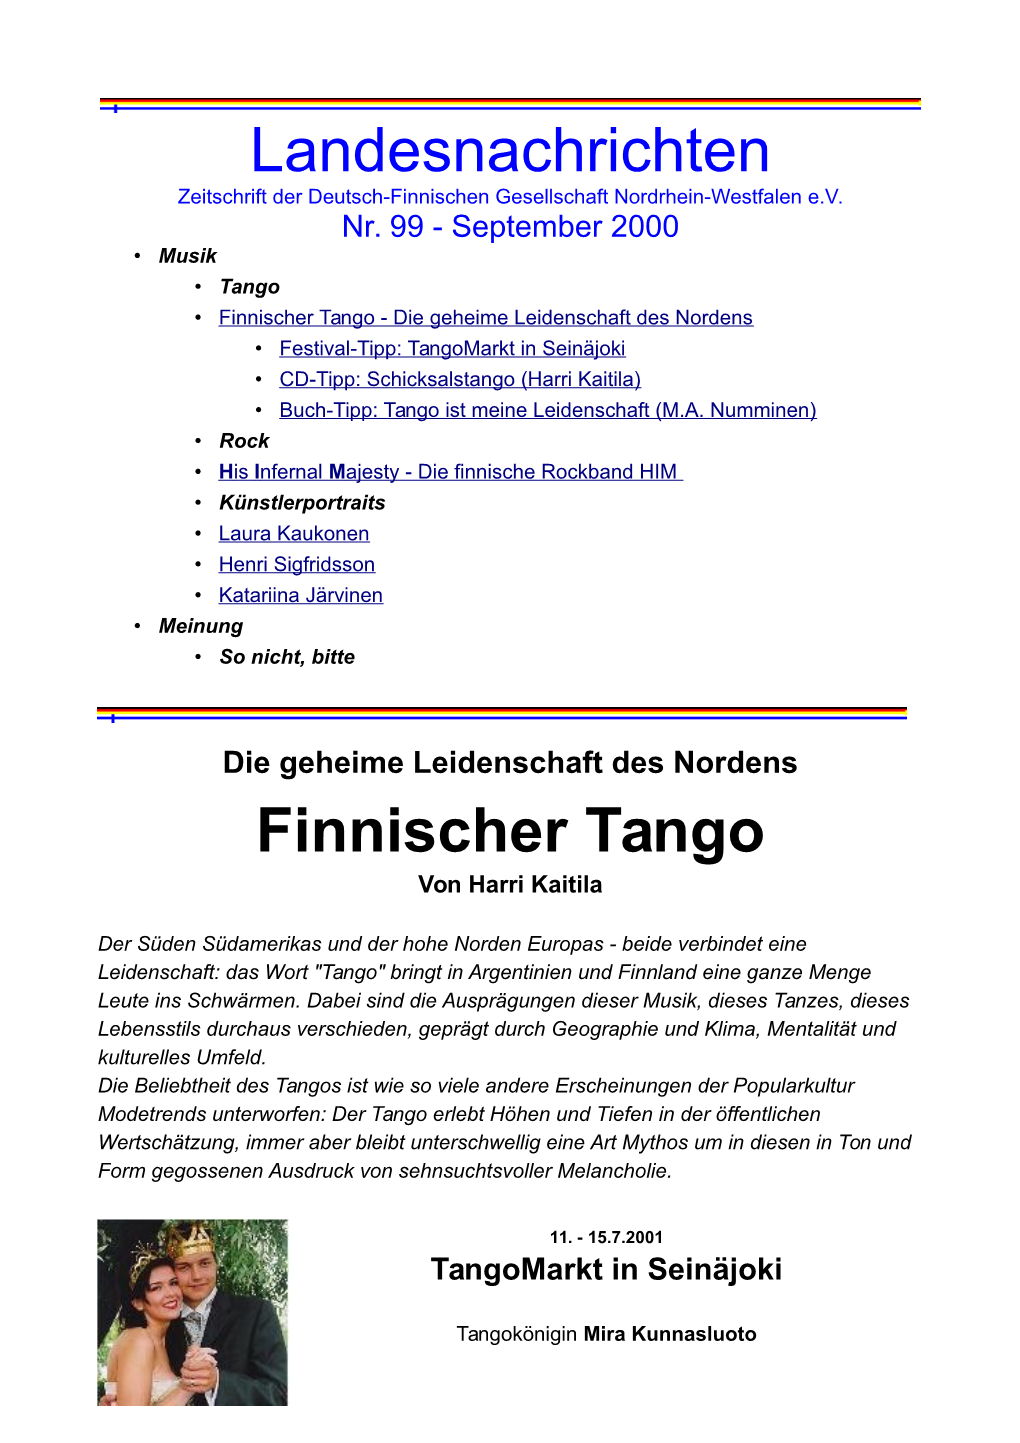 Landesnachrichten Finnischer Tango